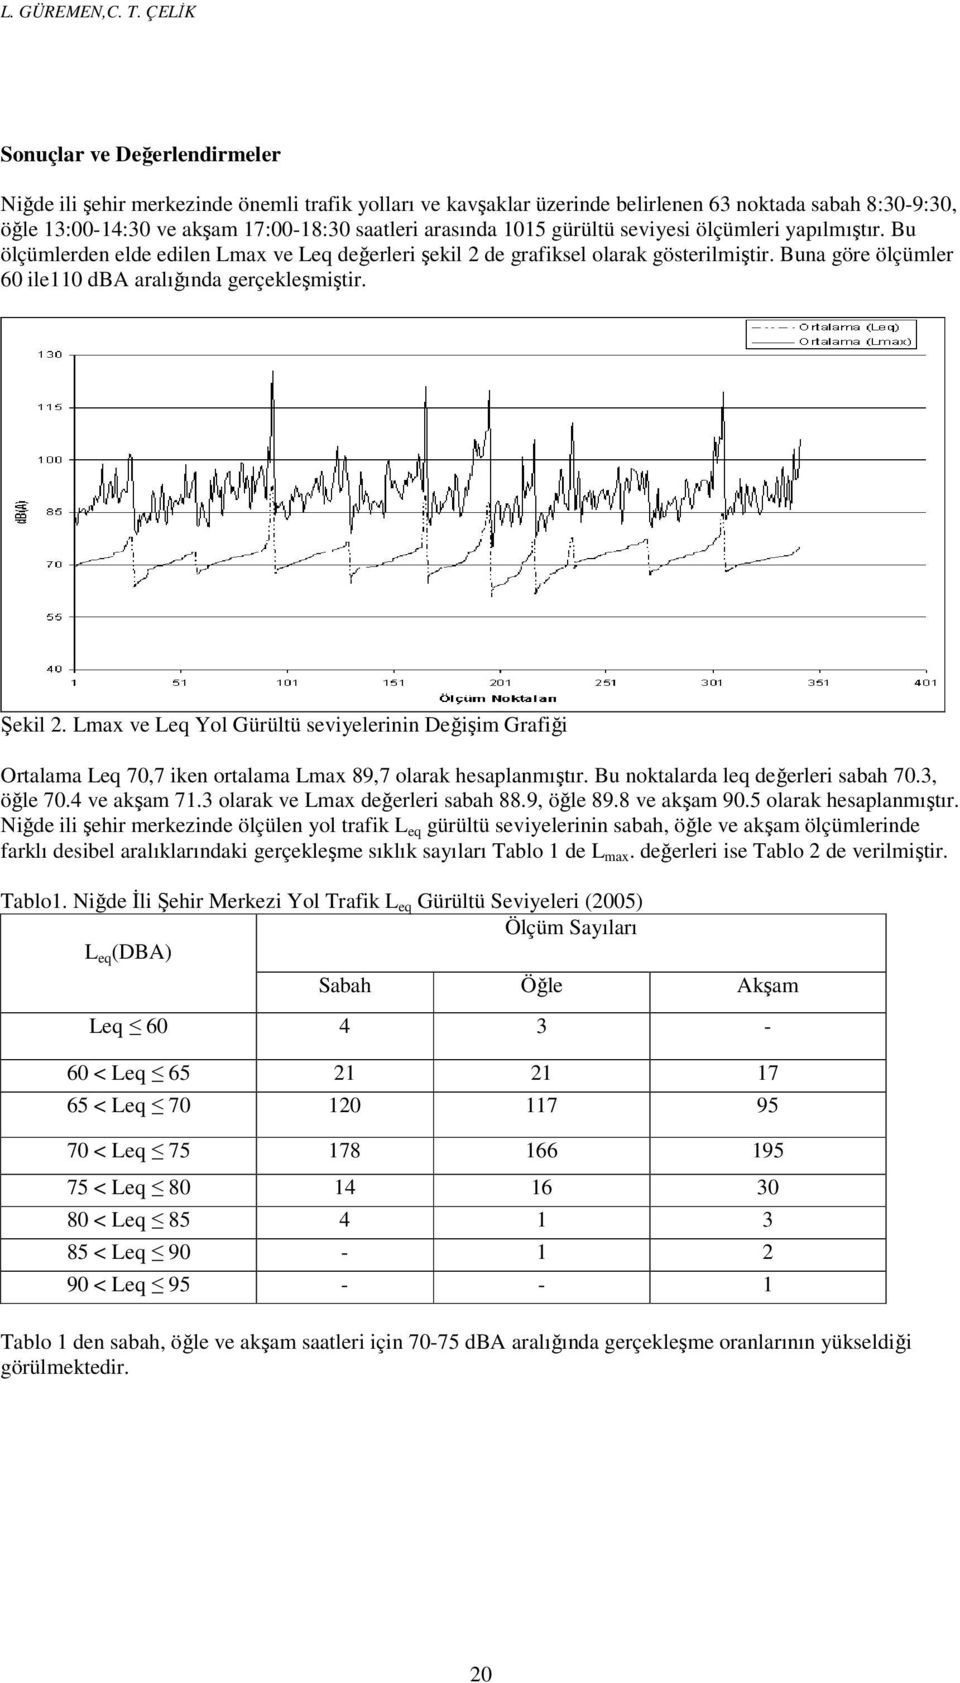 arasında 1015 gürültü seviyesi ölçümleri yapılmıştır. Bu ölçümlerden elde edilen Lmax ve Leq değerleri şekil 2 de grafiksel olarak gösterilmiştir.